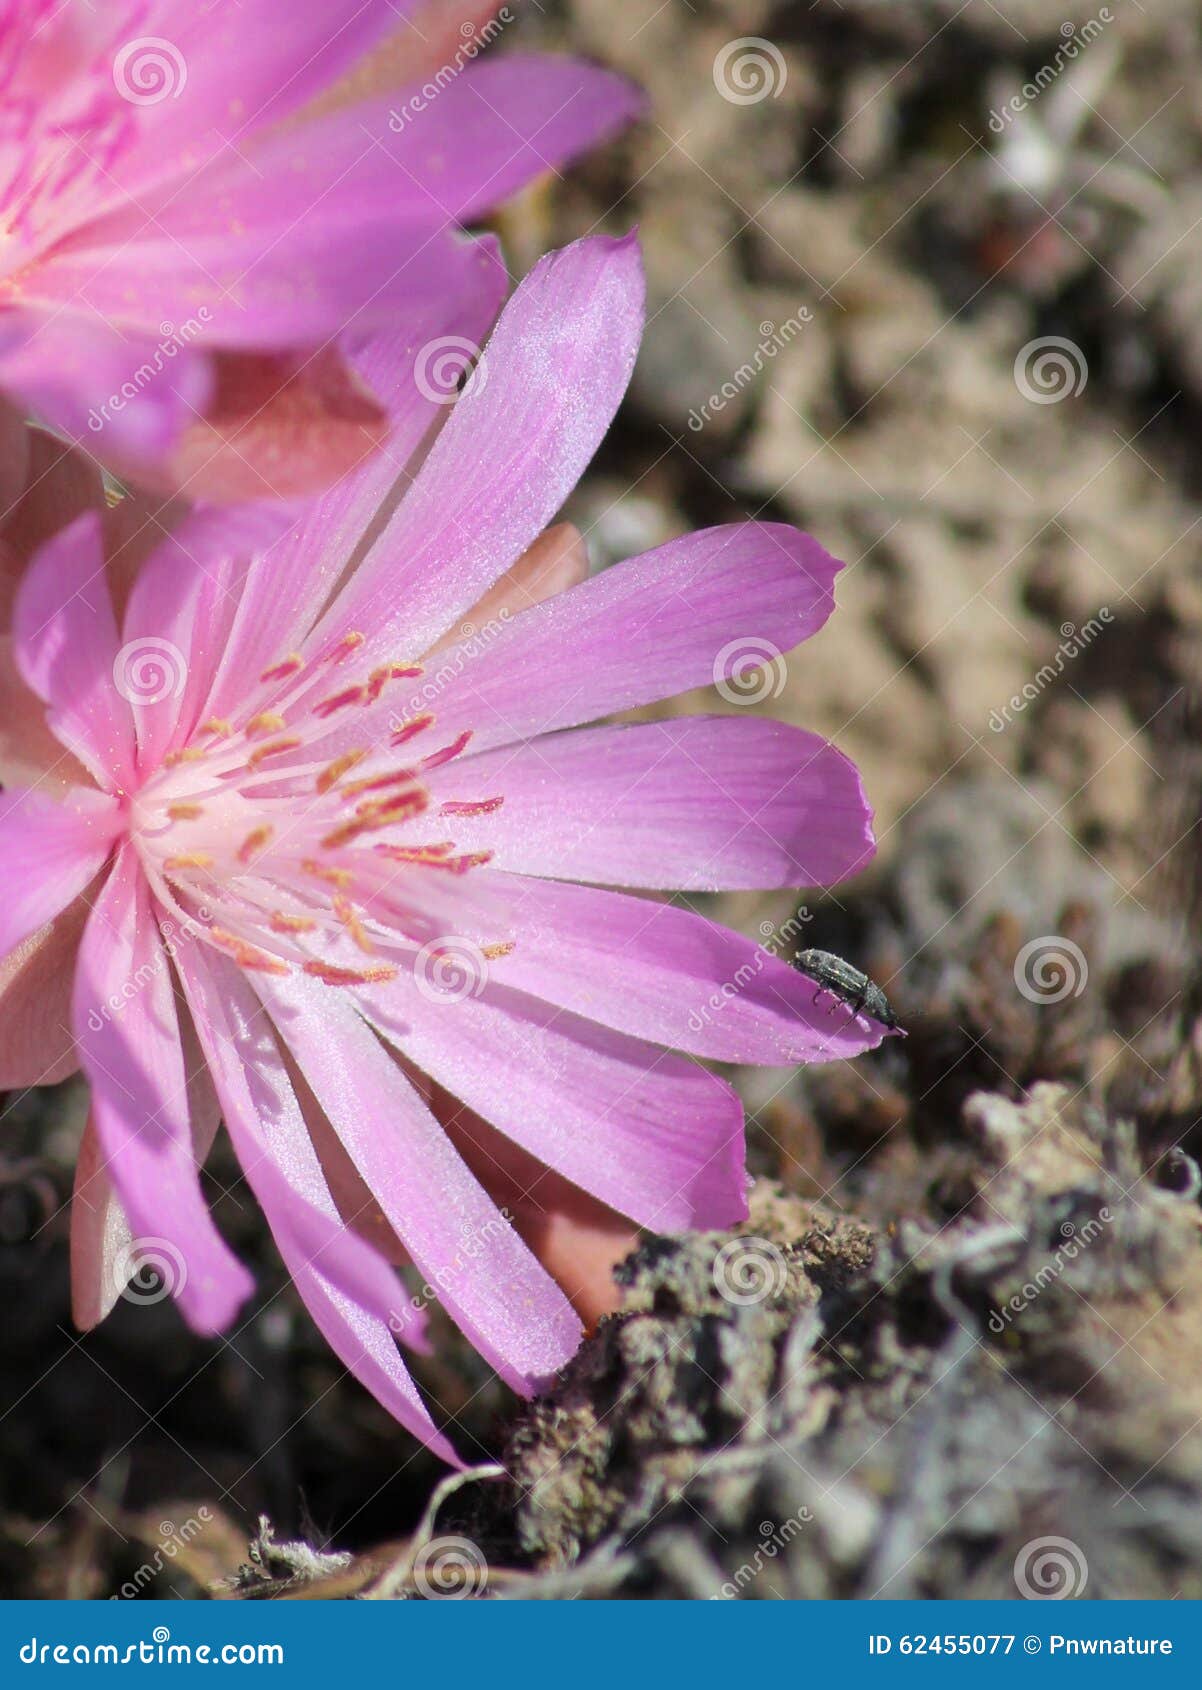 beetle on a bitterroot flower